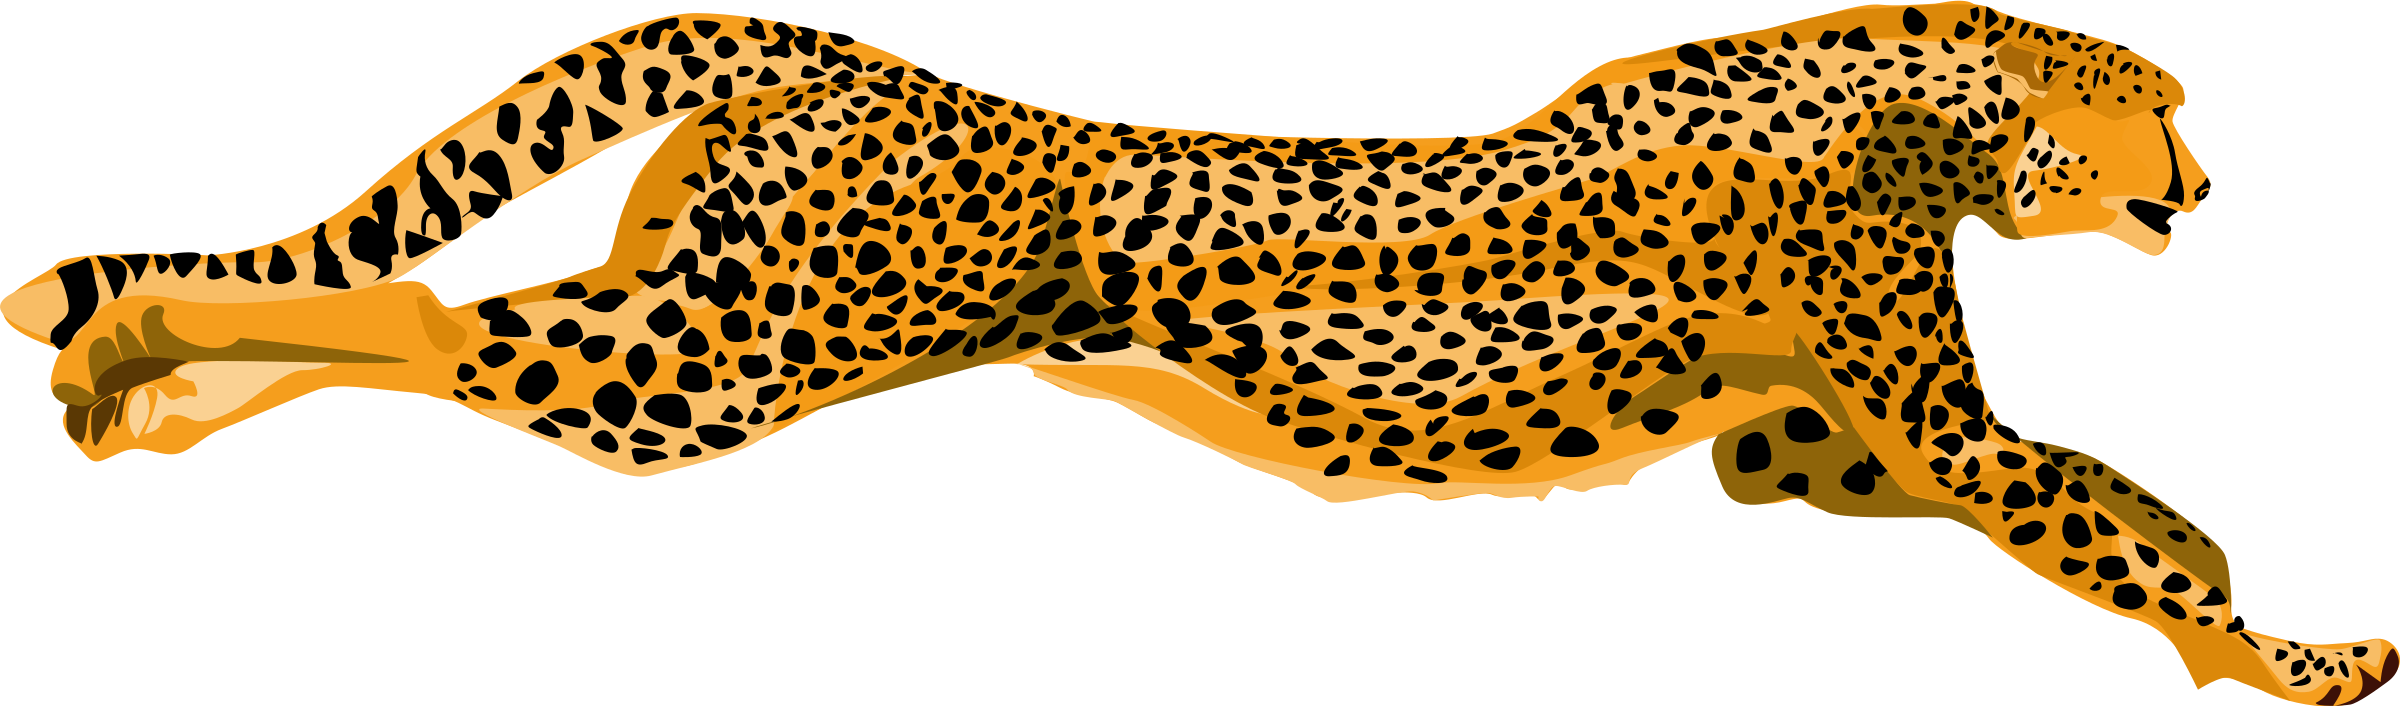 Free cheetah clipart clip art